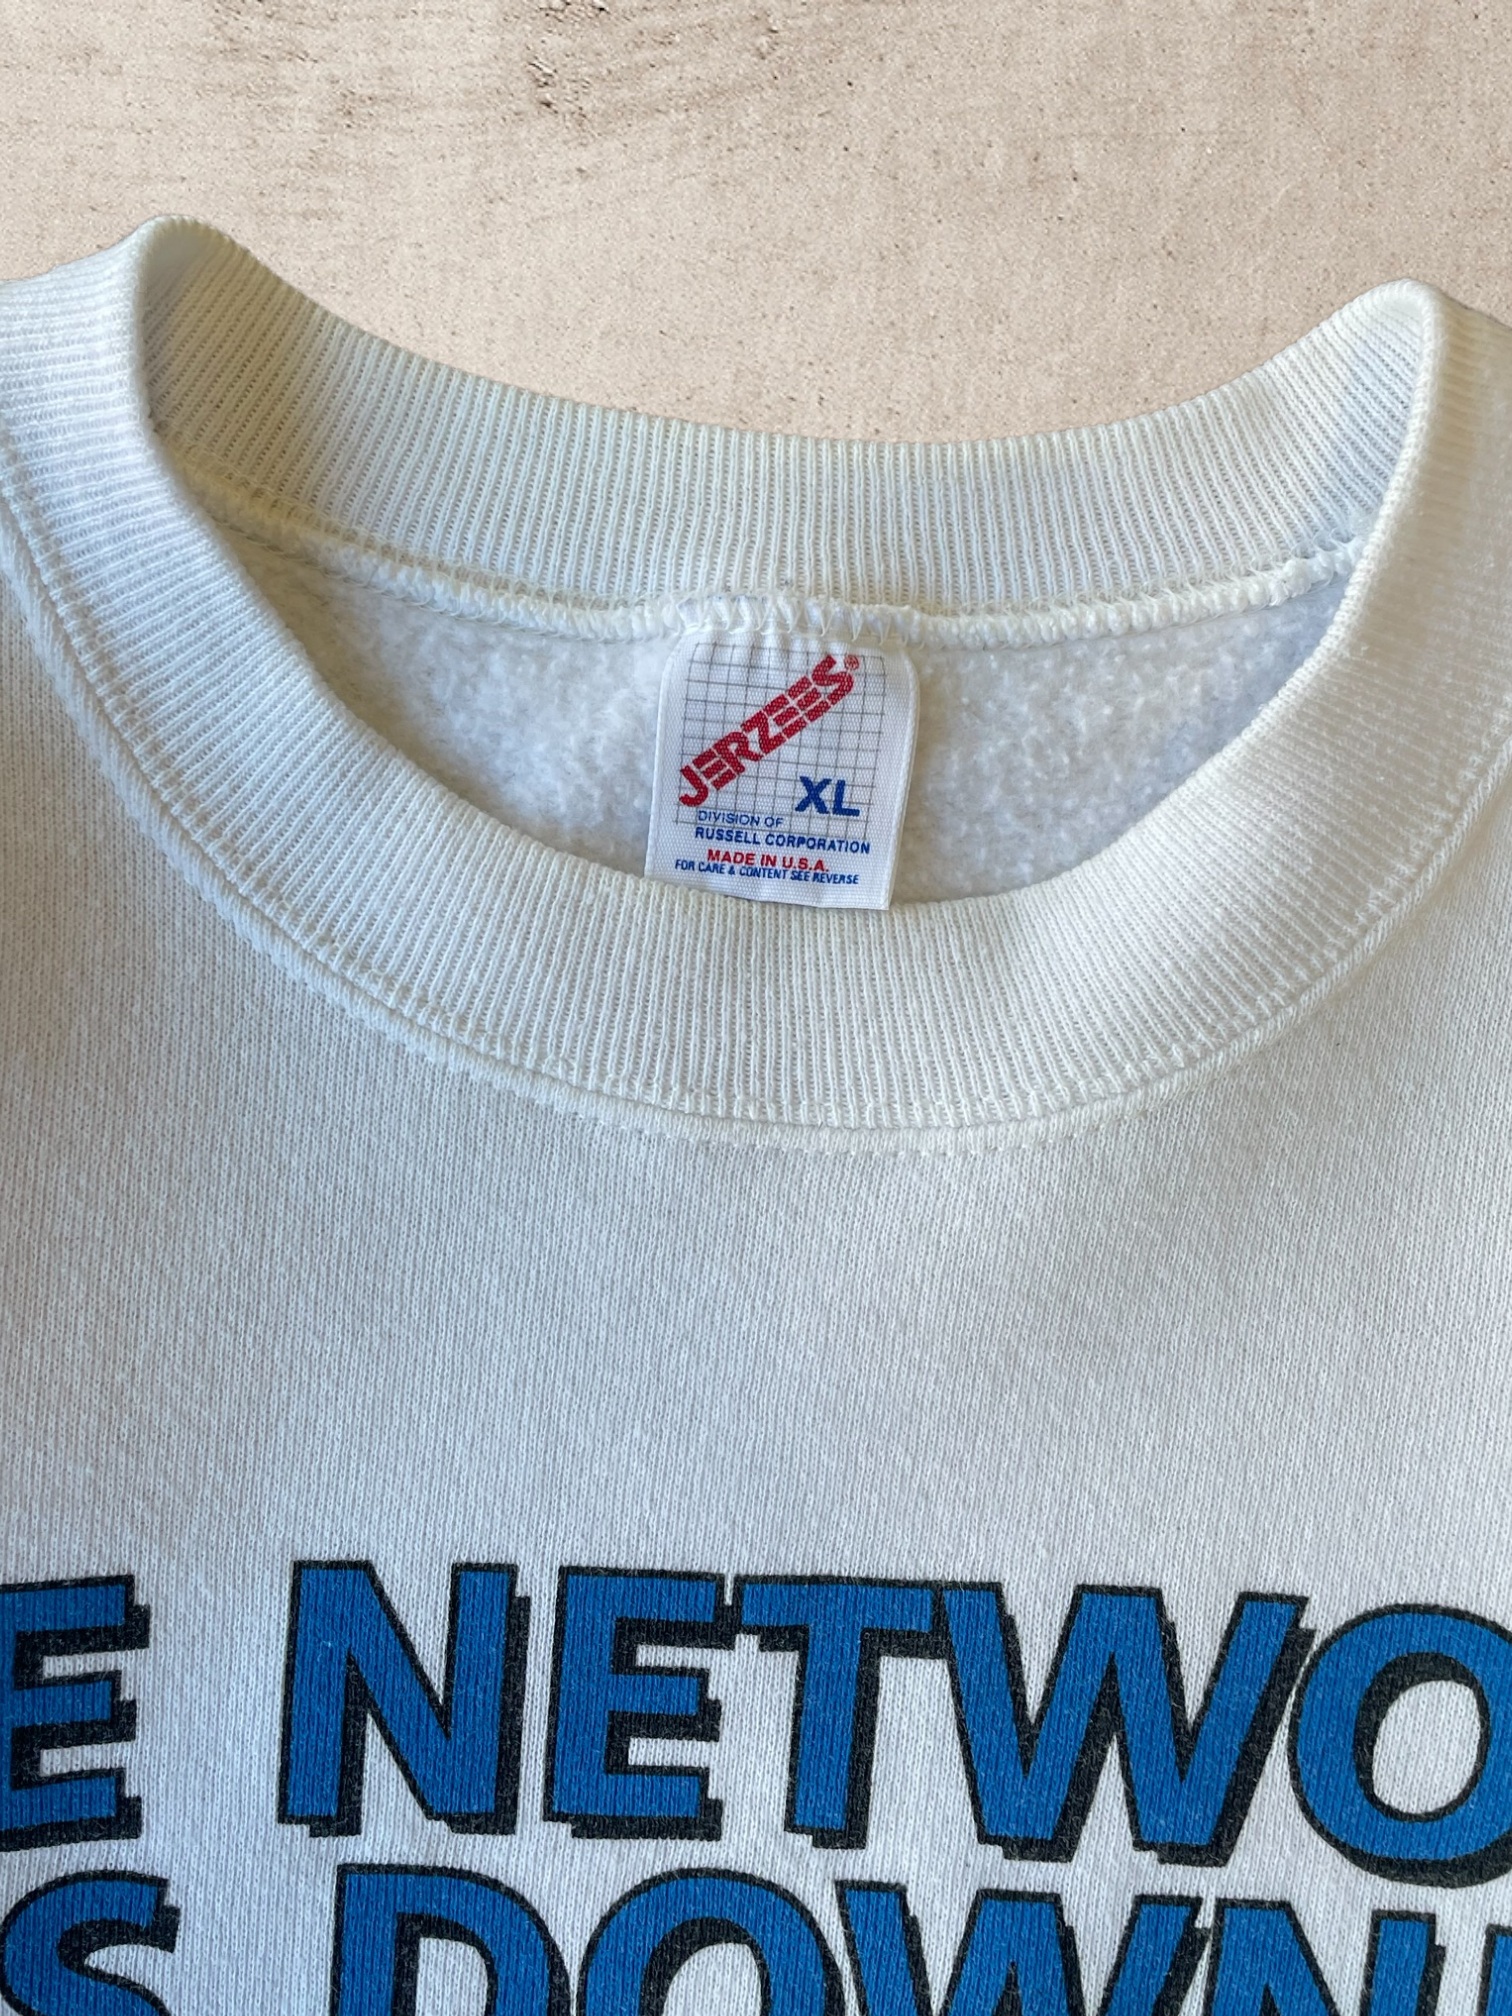 90年代 The Network is Down クルーネック - XL